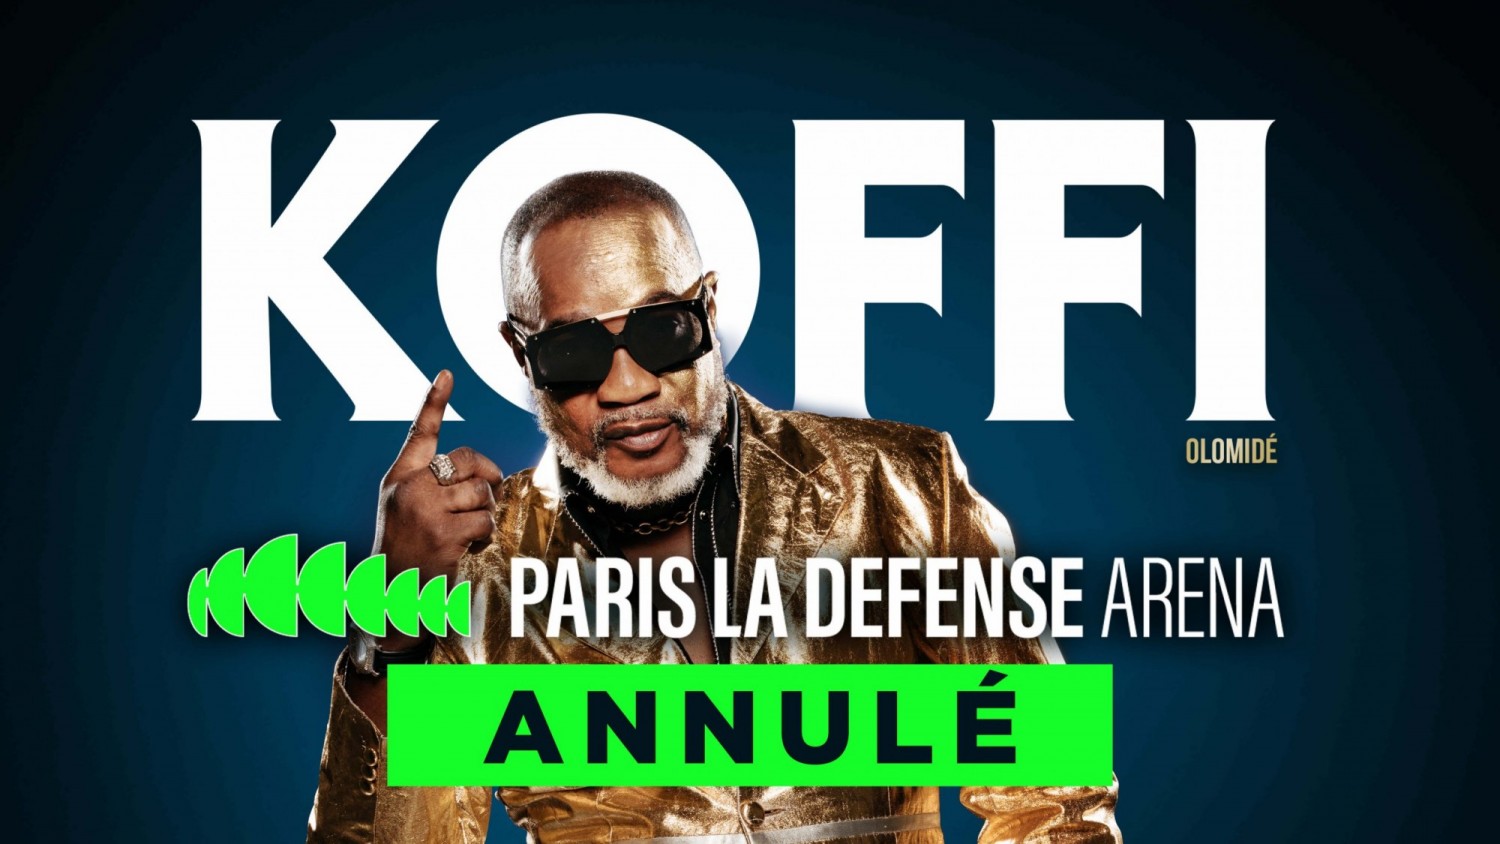 RDC-France : Coup dur pour Koffi Olomidé, son concert à Paris annulé